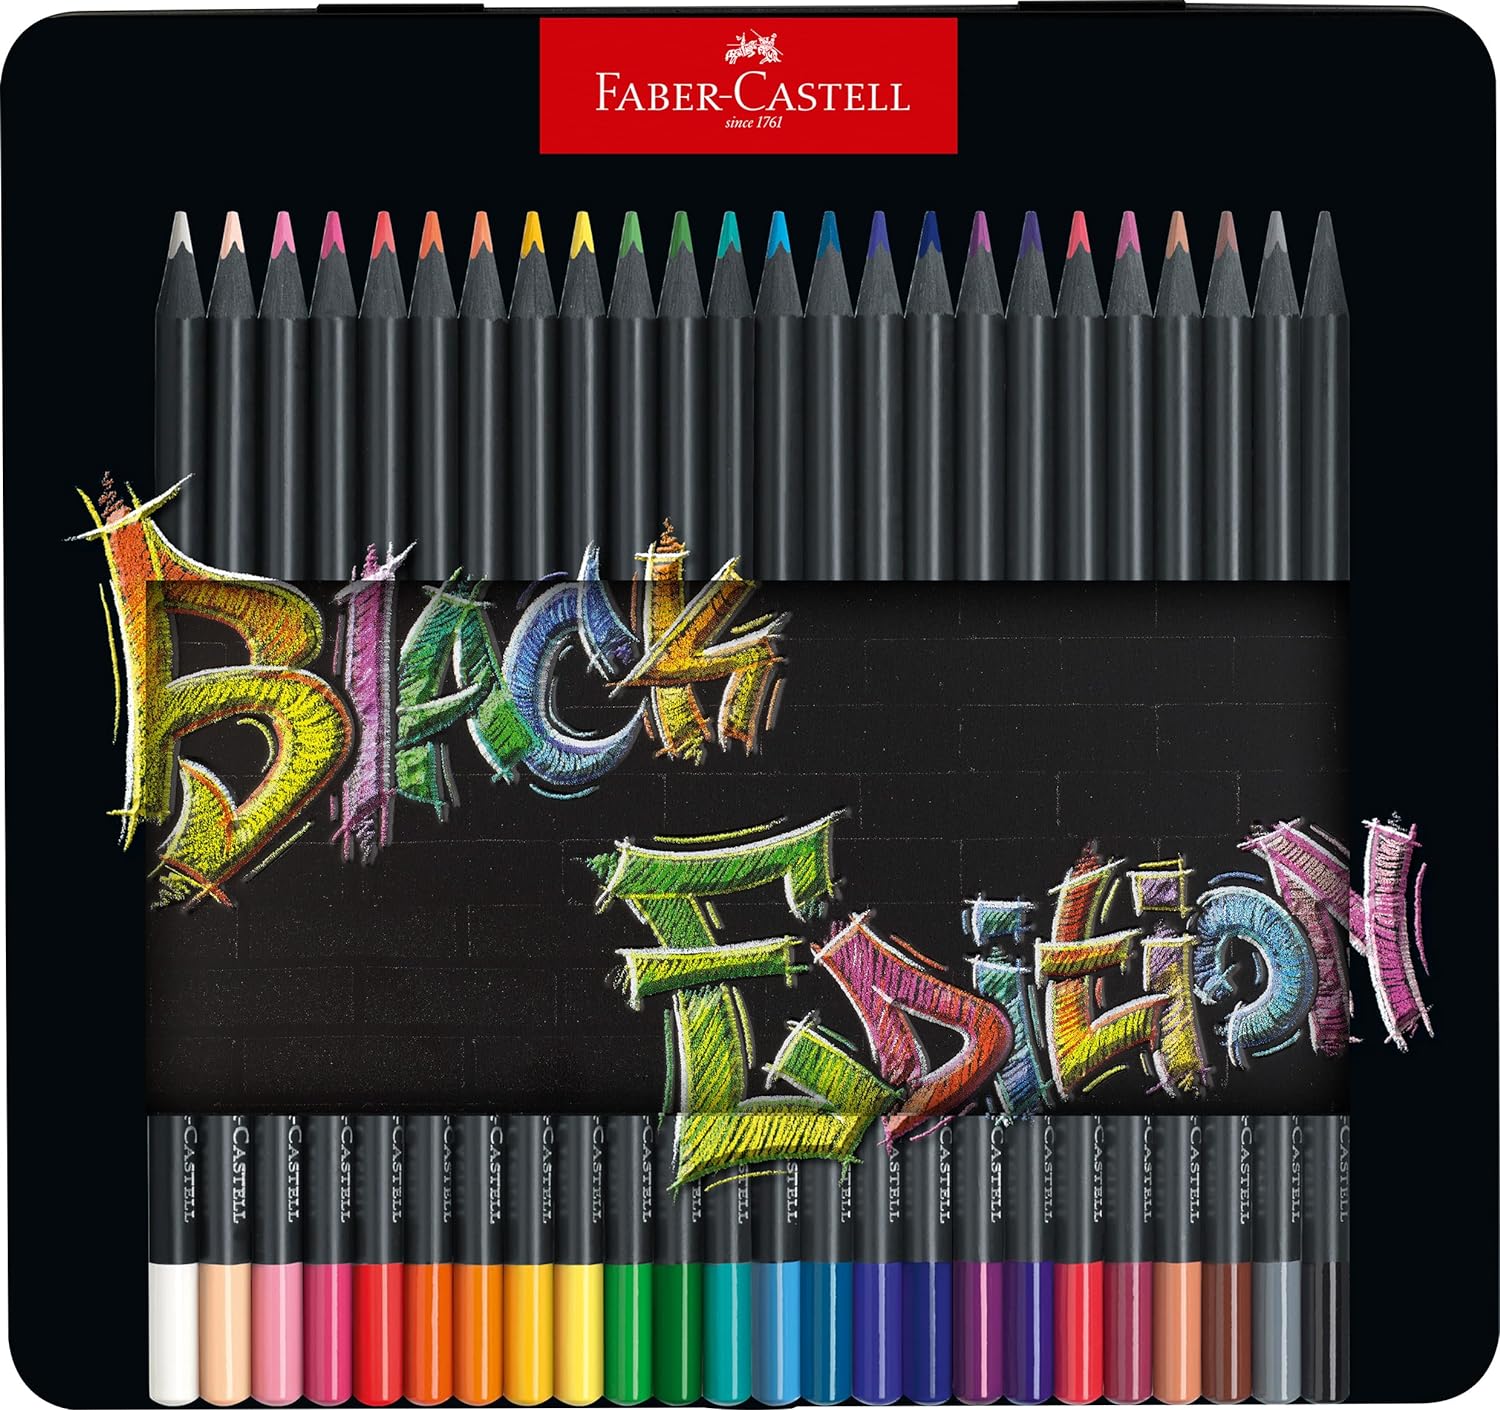 Faber-Castell Black Edition Boîte Métal de 24 Crayons de Couleur - Mine Super Douce - Bois Noir - Idéal pour Dessiner sur Papier Clair, Foncé et Coloré - Couleurs Assorties